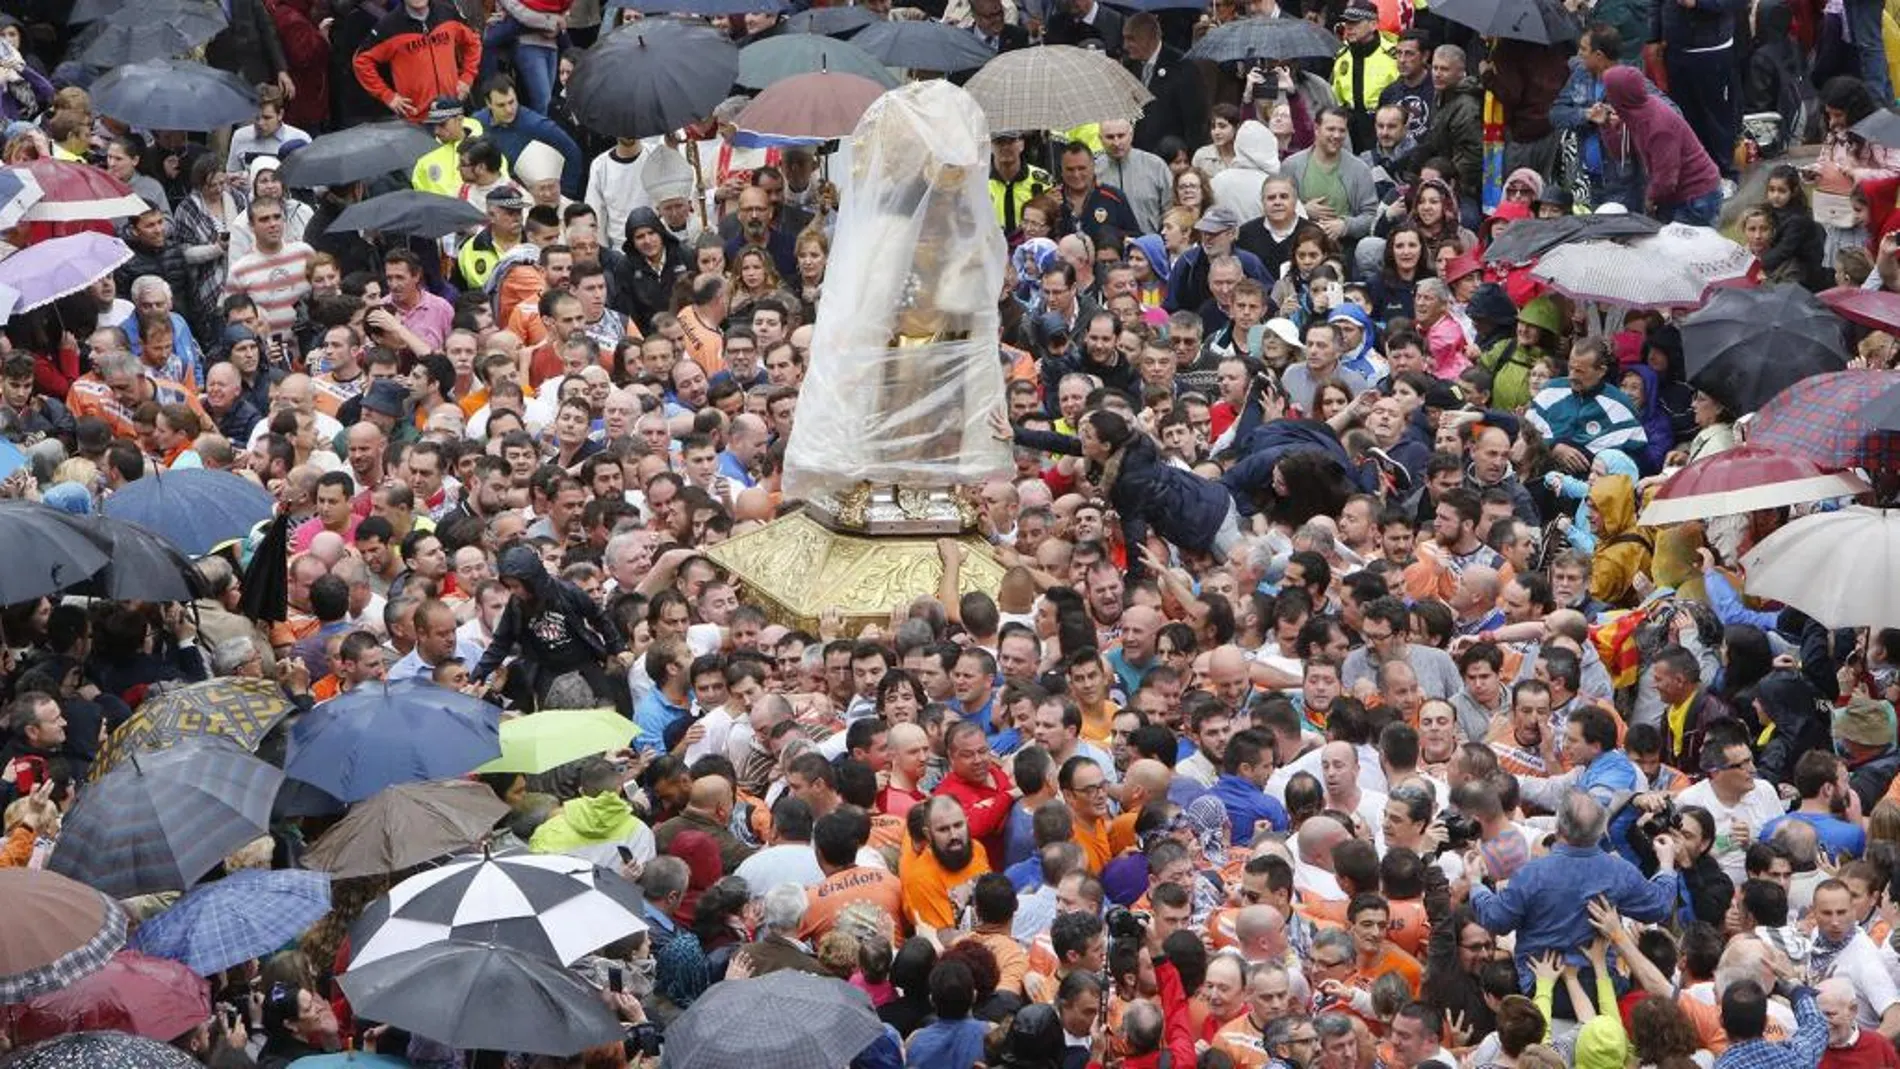 El tradicional traslado de la patrona de los valencianos se prolongó durante 25 minutos durante los cuales la lluvia no dio tregua alguna. Por ello, la Virgen tuvo que ser cubierta con un plástico. Centenares de devotos acudieron a la plaza para el acto.